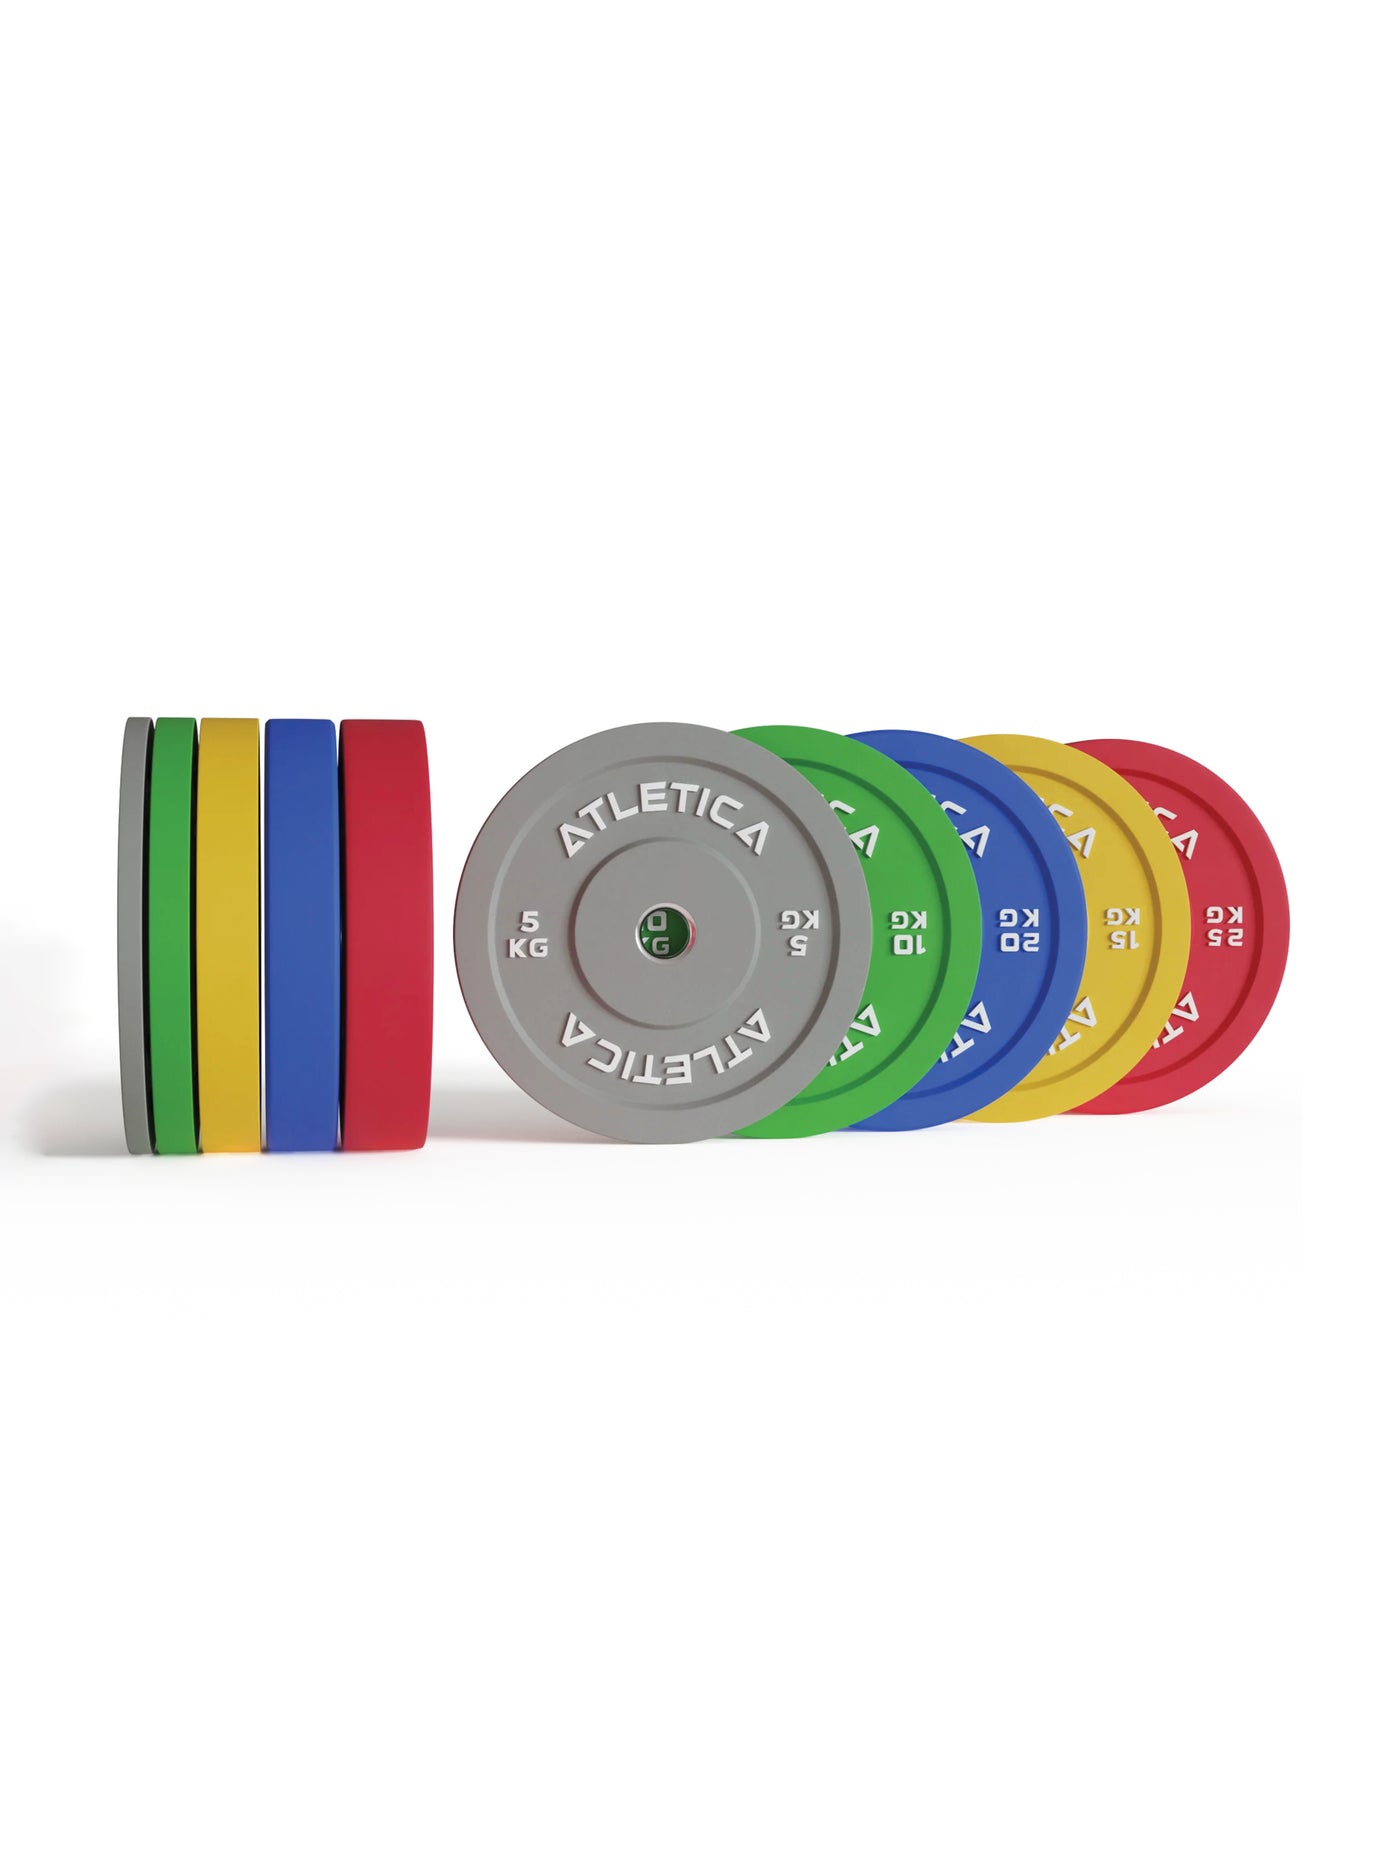 ATLETICA Color Bumper Plates Set: 150 kg bestehend aus 2x 5 kg ∣ 2x 10 kg ∣ 2x 15 kg ∣ 2x 20 kg ∣ 2x 25 kg | 50 mm